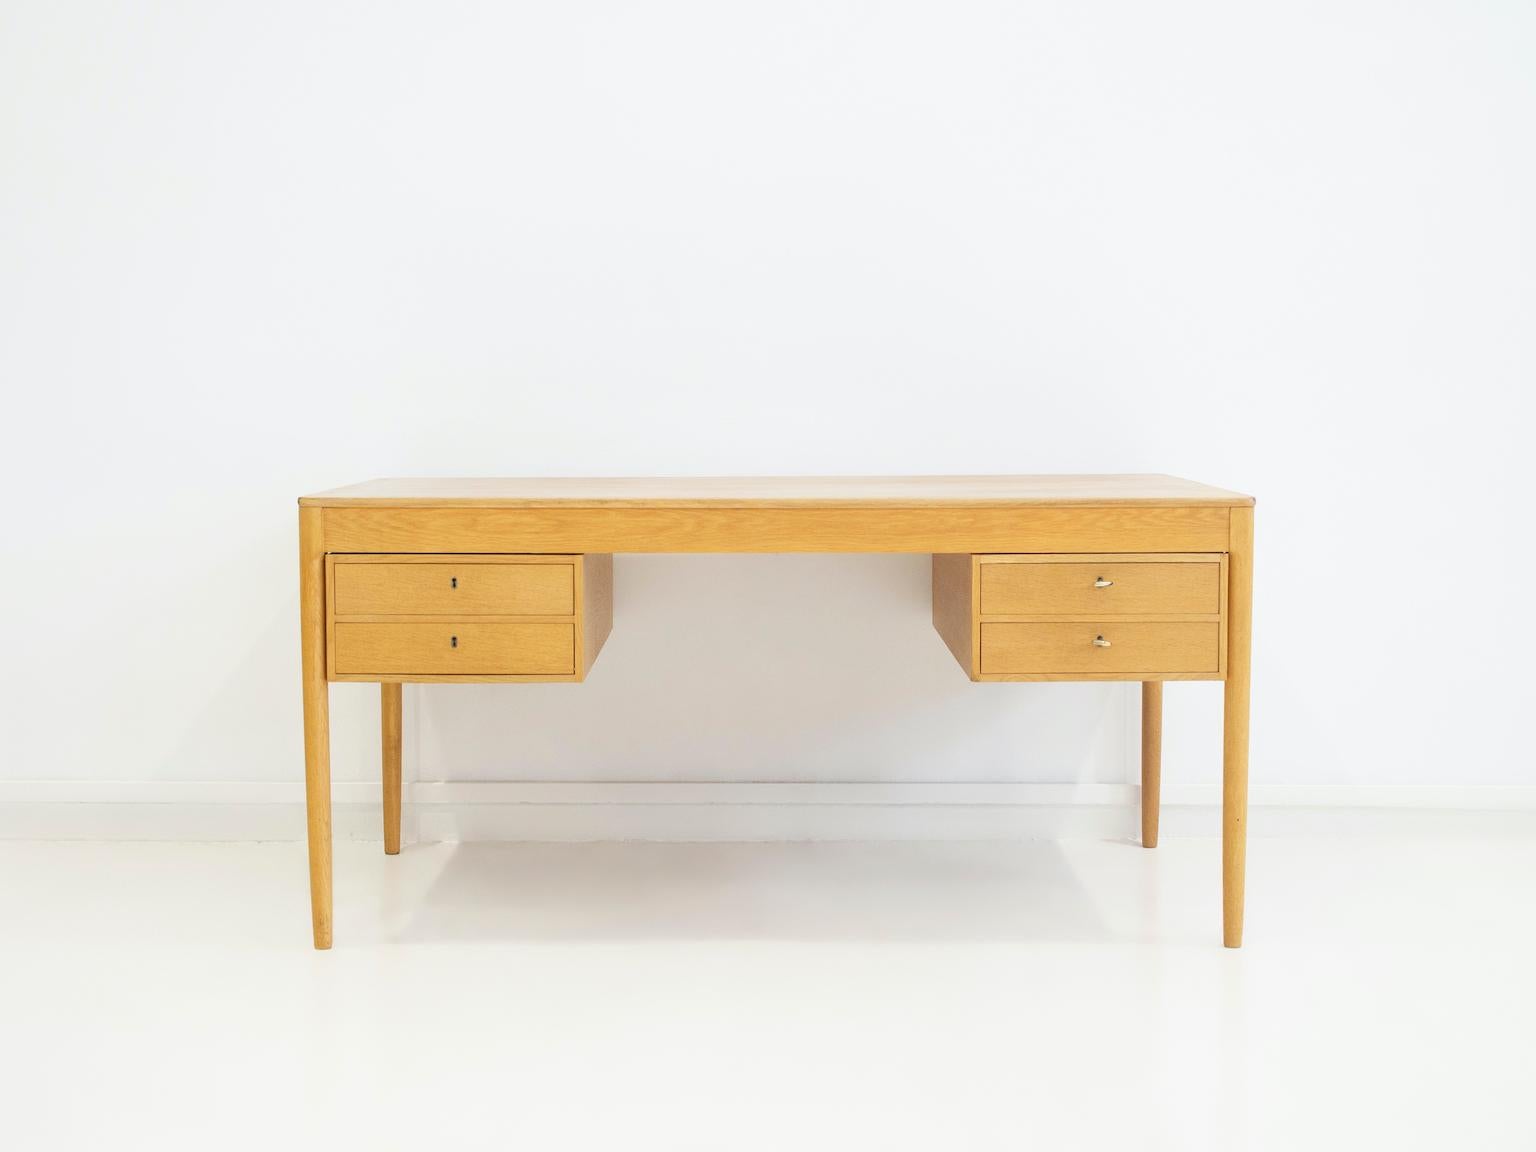 Schreibtisch aus Eichenholz, entworfen von Yngvar Sandström und hergestellt von AB Seffle Möbelfabrik in Schweden. Der Schreibtisch verfügt über zwei Schubladen auf beiden Seiten, die leicht herausgenommen werden können. Inklusive Schlüssel.